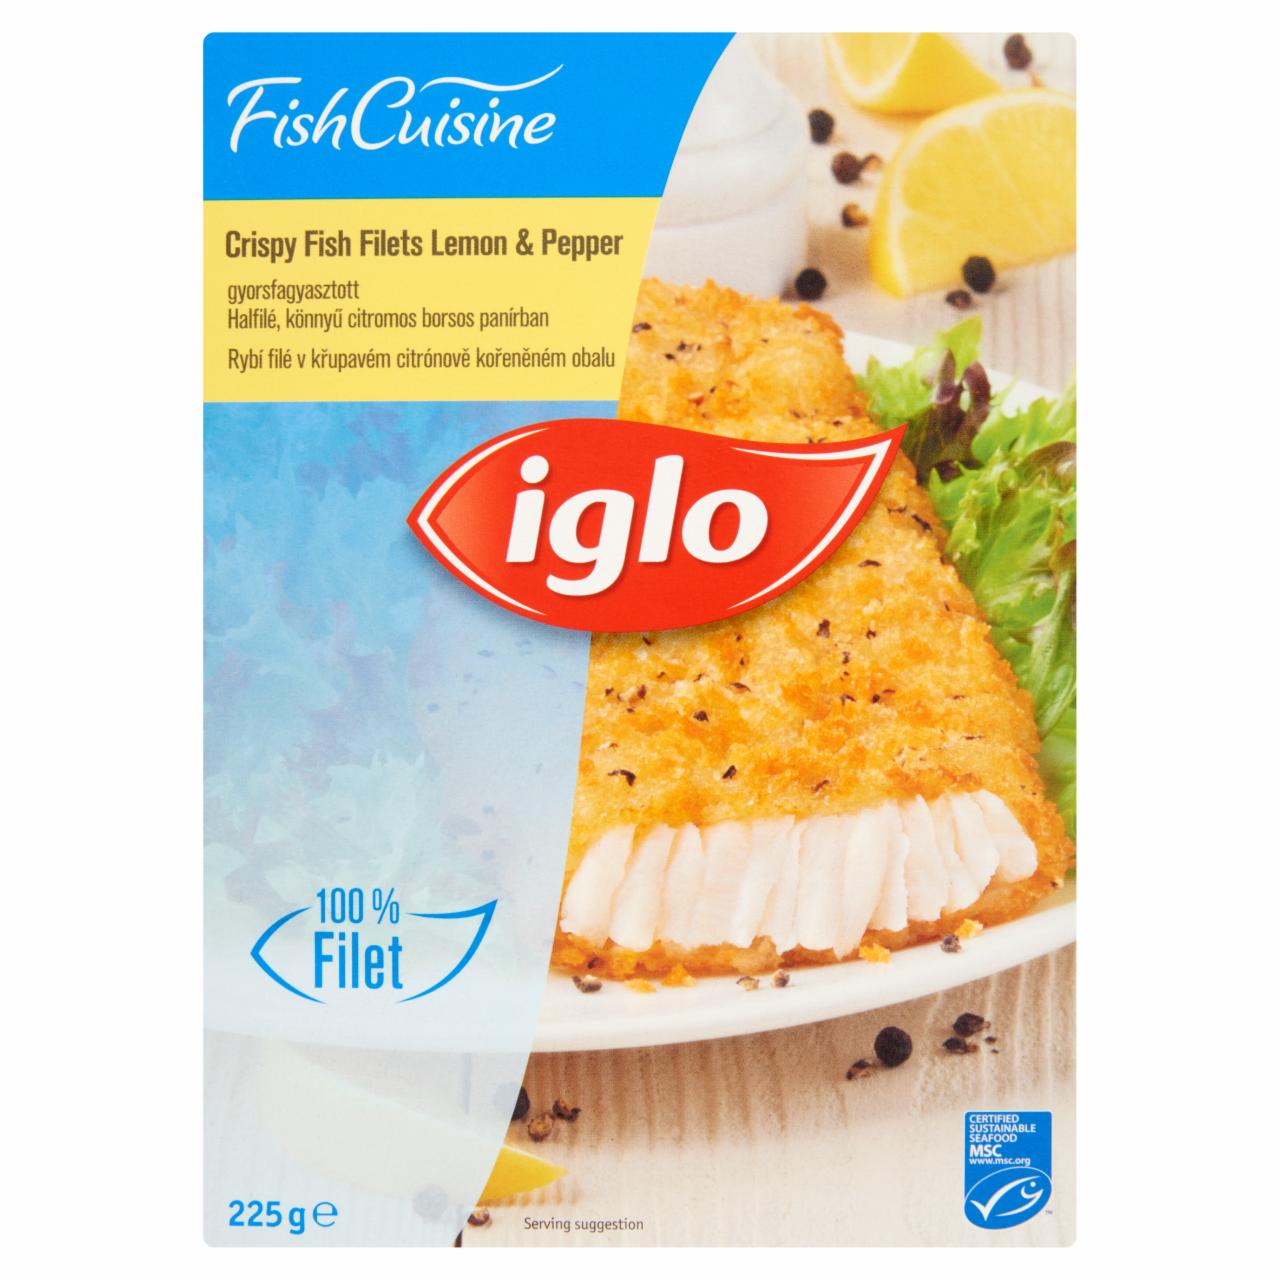 Képek - Iglo Fish Cuisine gyorsfagyasztott halfilé könnyű citromos borsos panírban 225 g